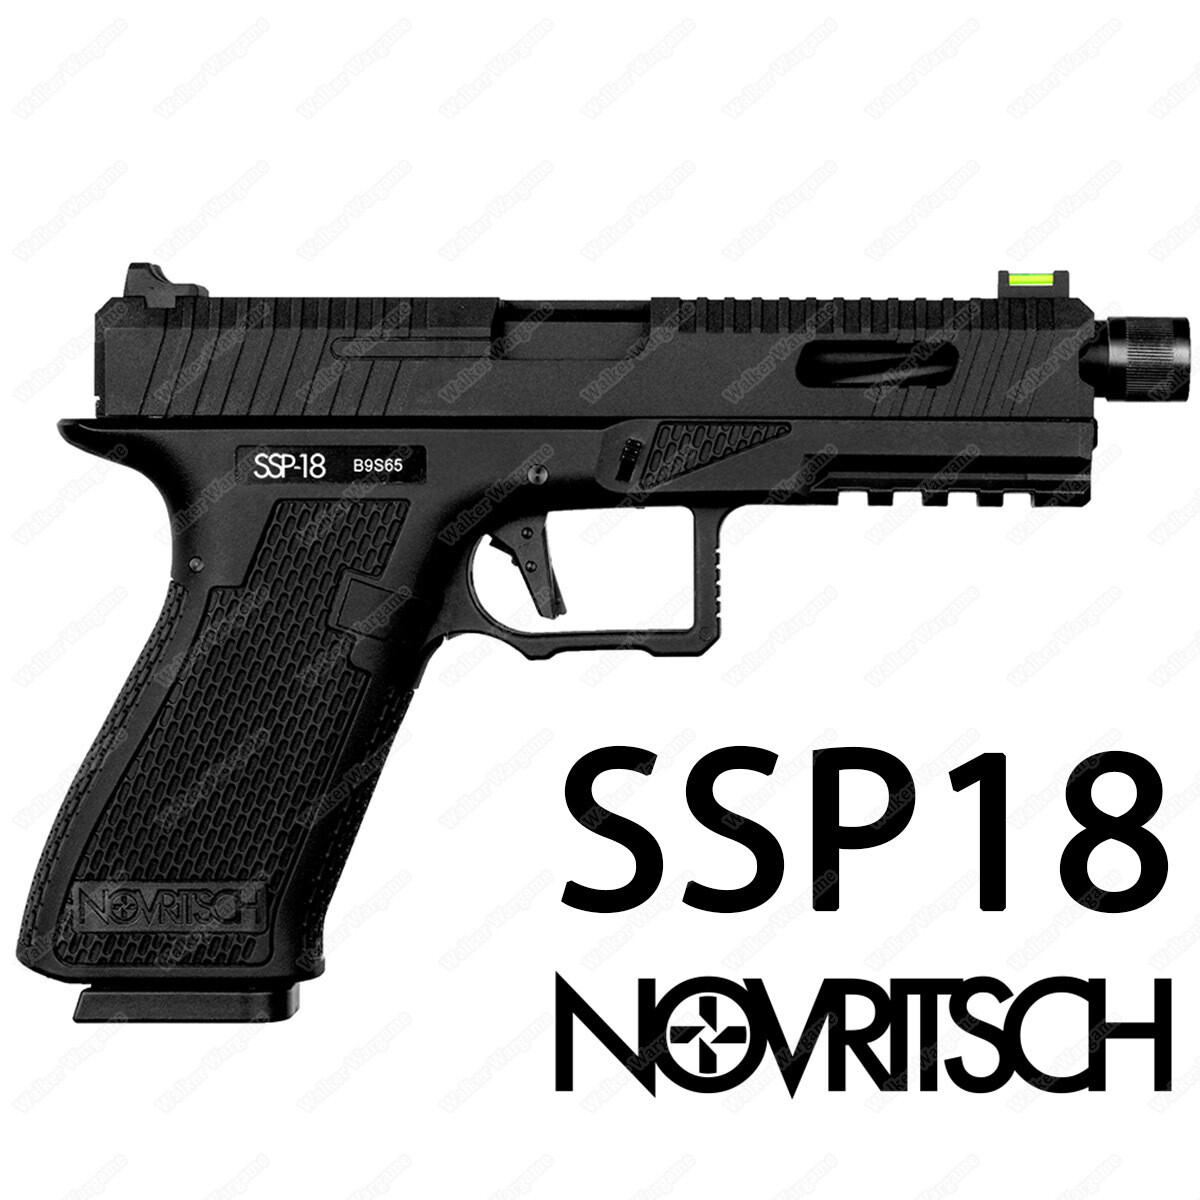 Novritsch SSP18 Gas Blowback Pistol Airsoft